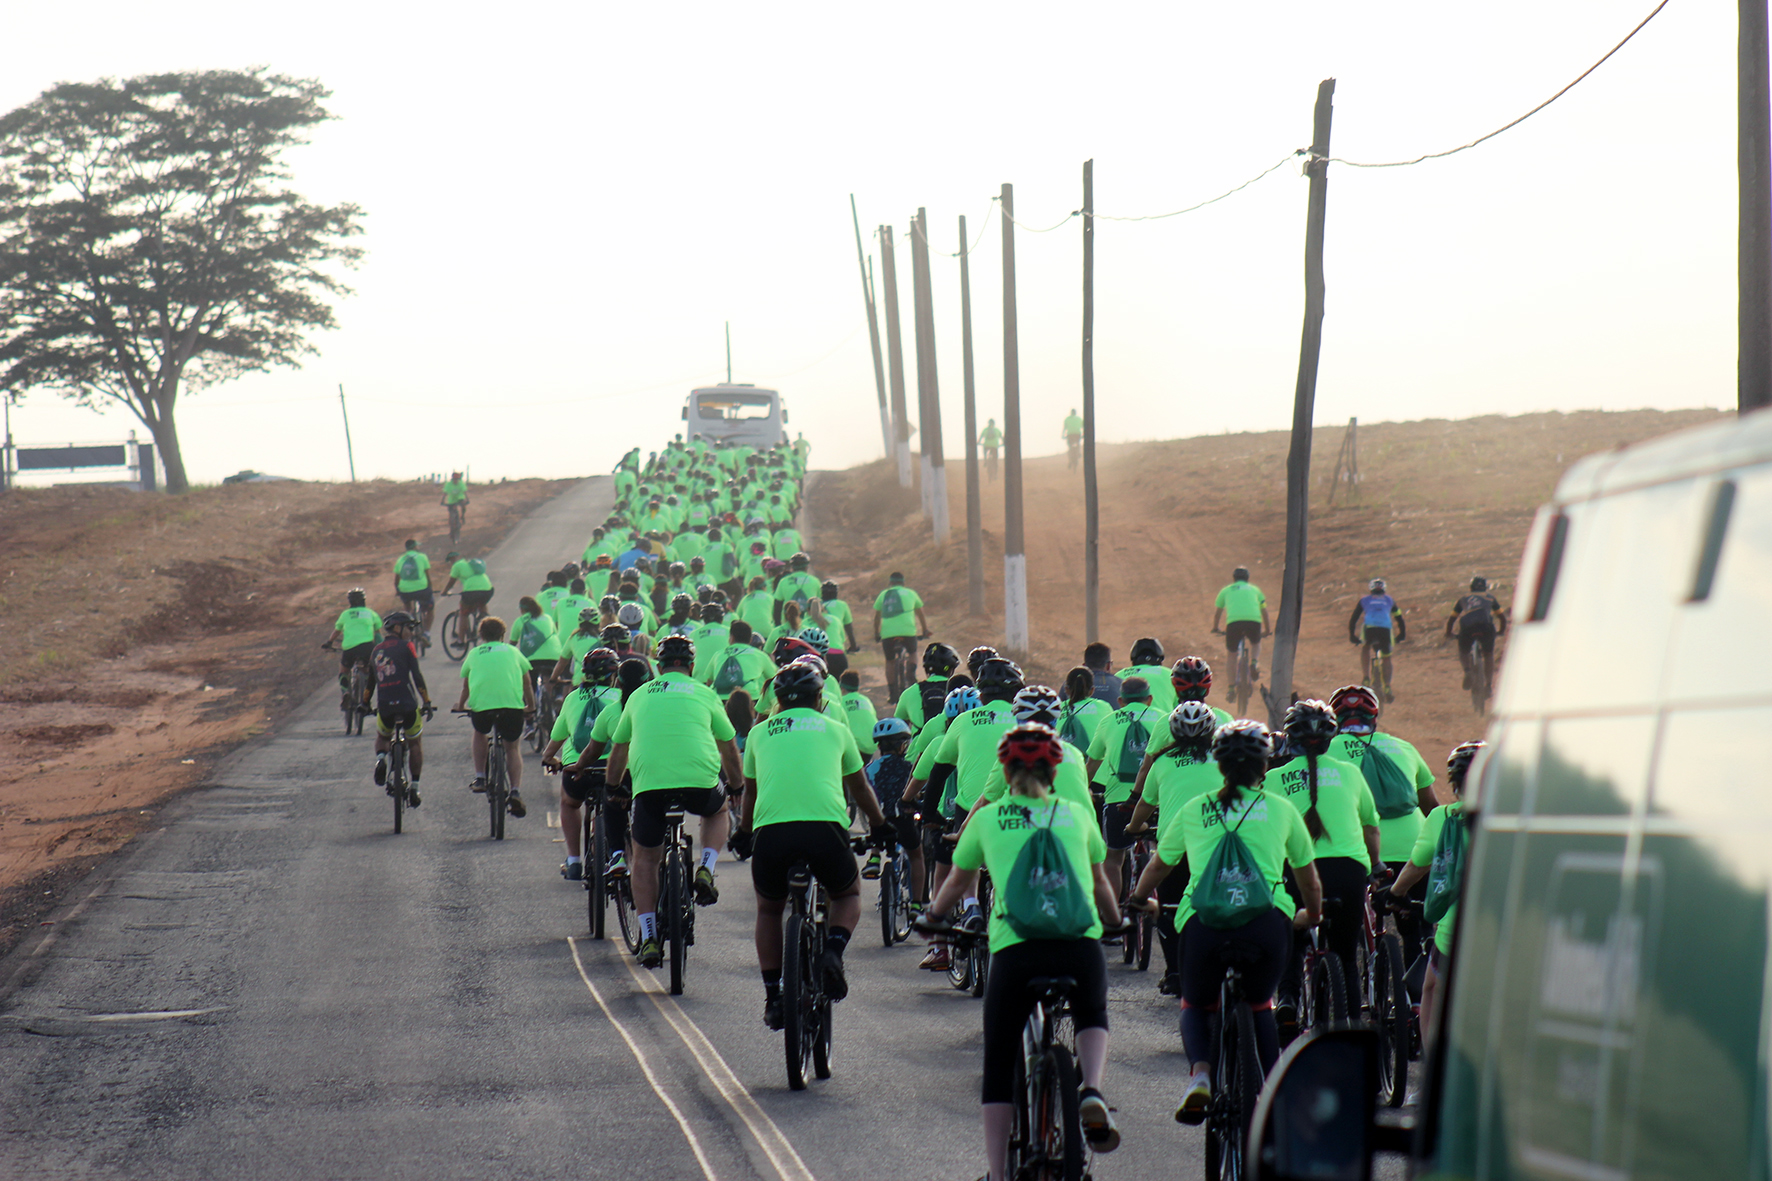 Ciclistas completaram percurso de 7km até a portaria da Cepêra, em Ibitirama